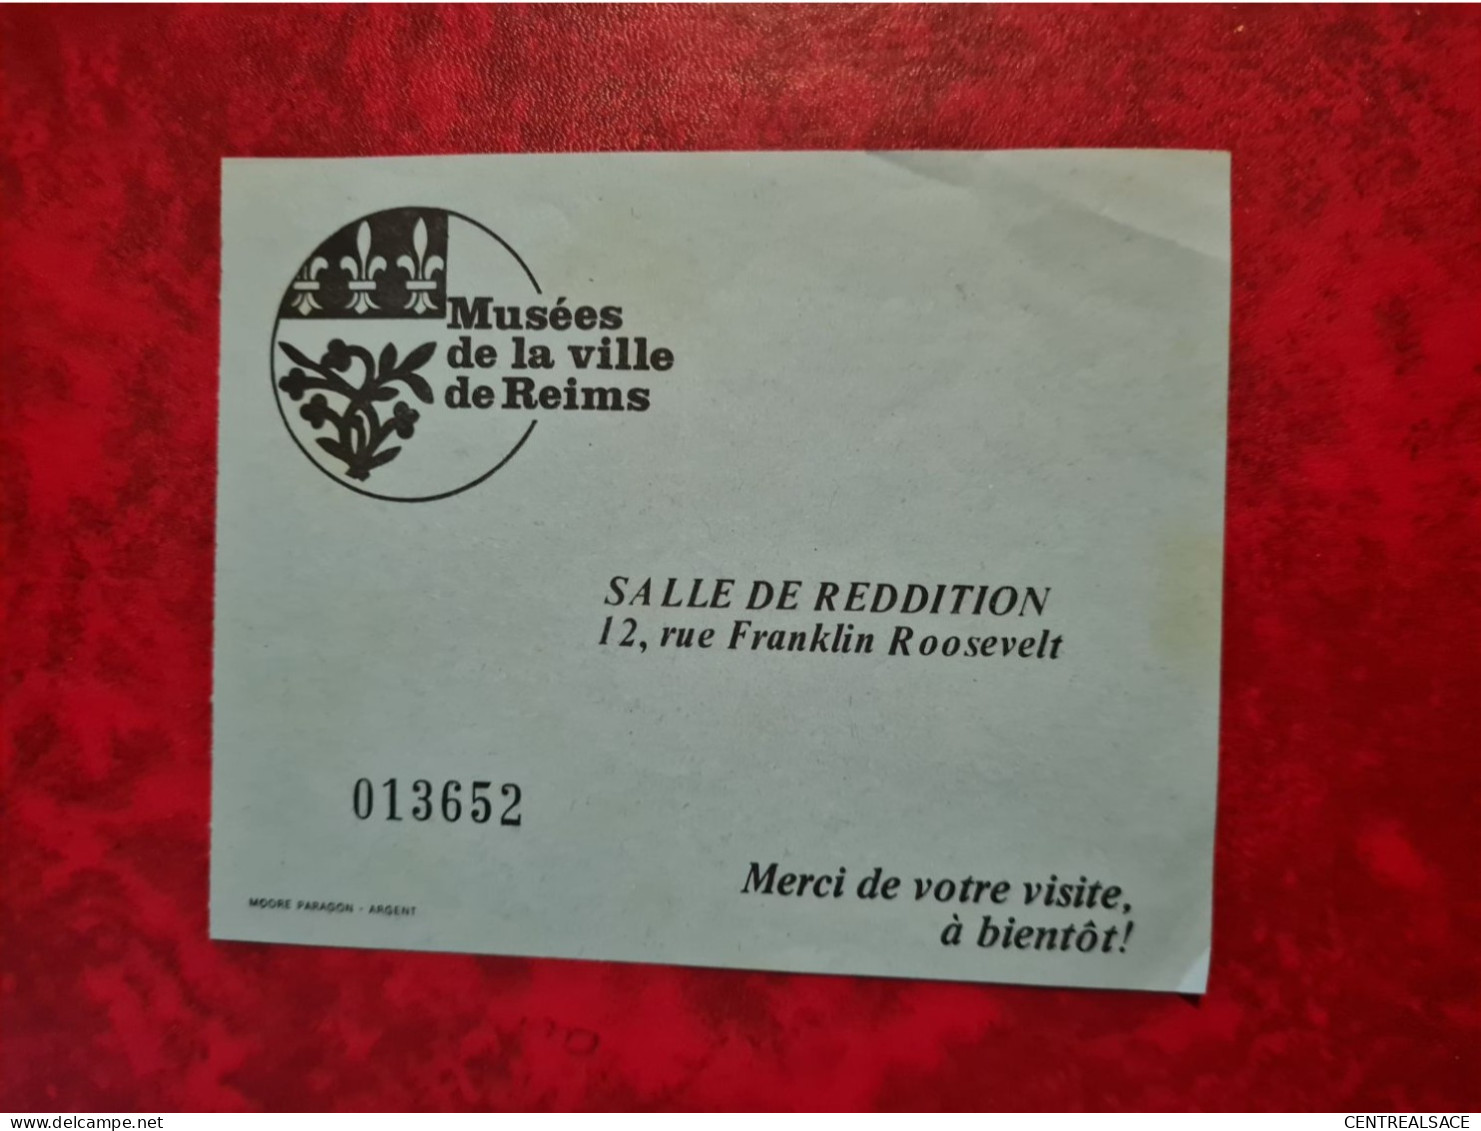 MUSEES DE LA VILLE DE REIMS SALLE DE REDDITION BILLET - Documents Historiques